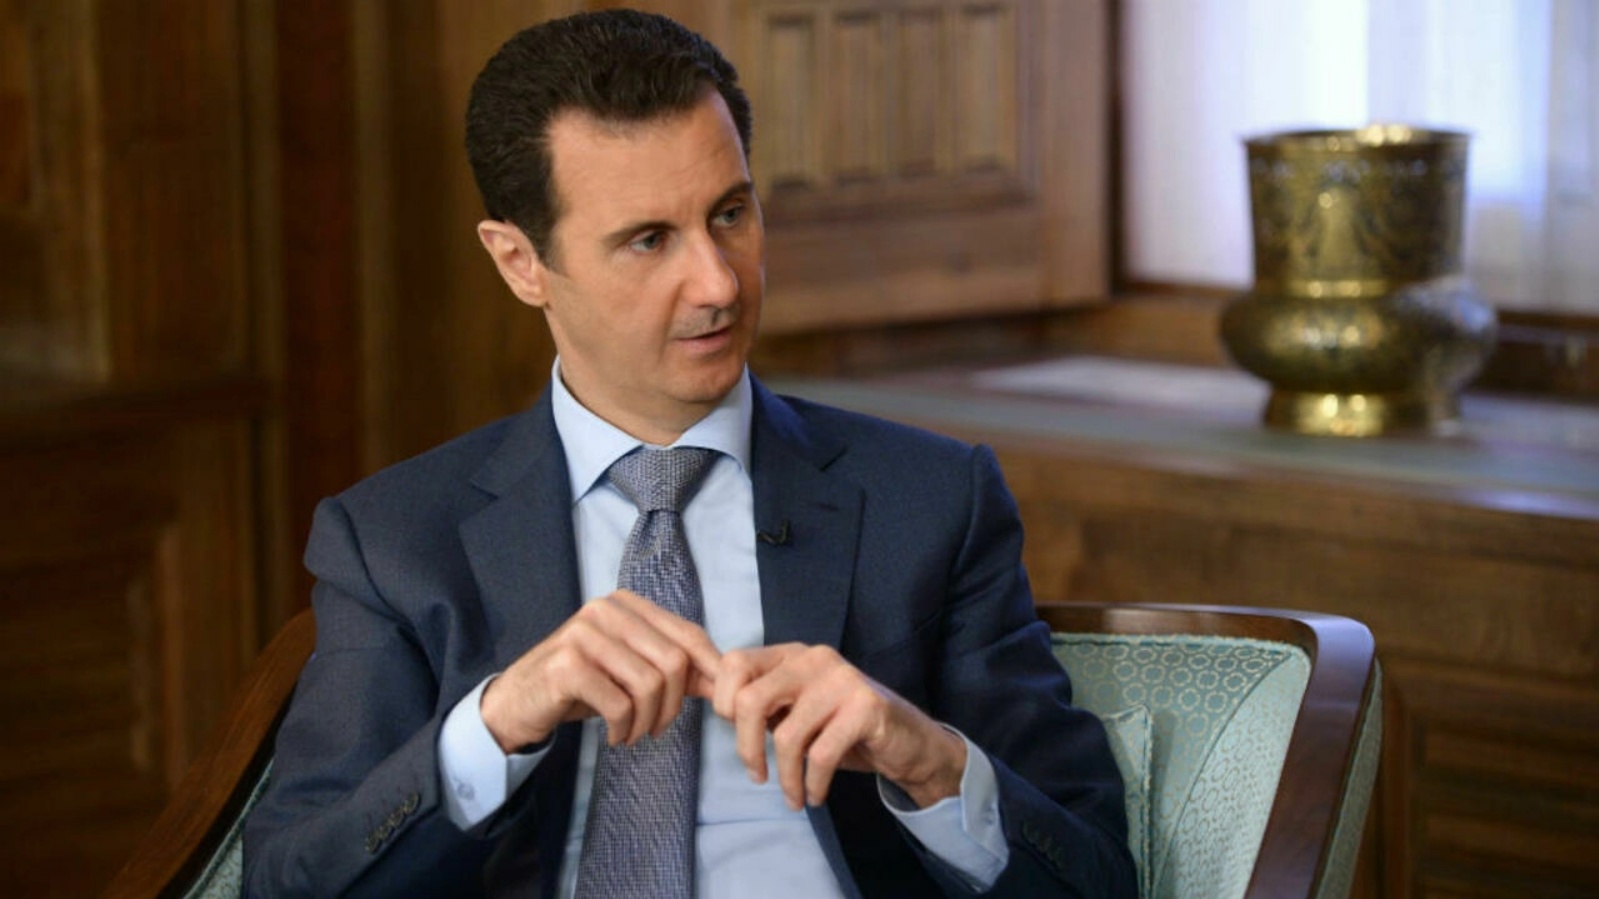 الرئيس السوري بشار الأسد في مقابلة في دمشق. (أرشيفية)